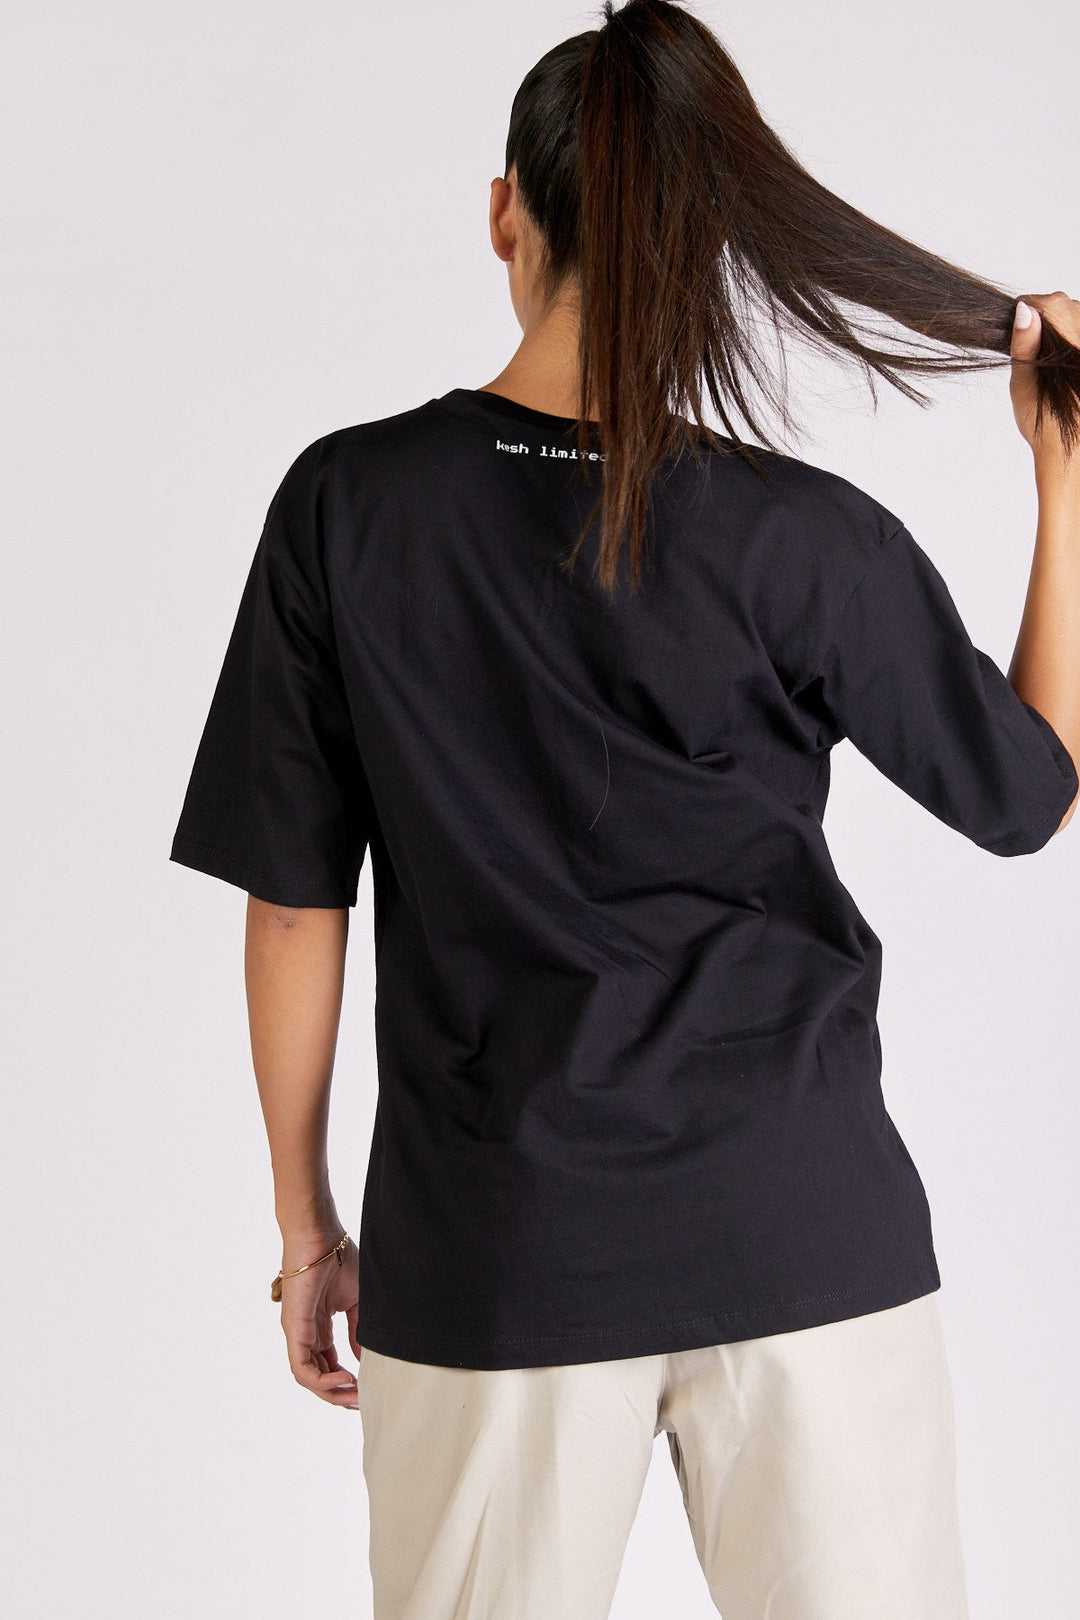 חולצת טי שירט ריבוט בצבע שחור - Kesh Limited